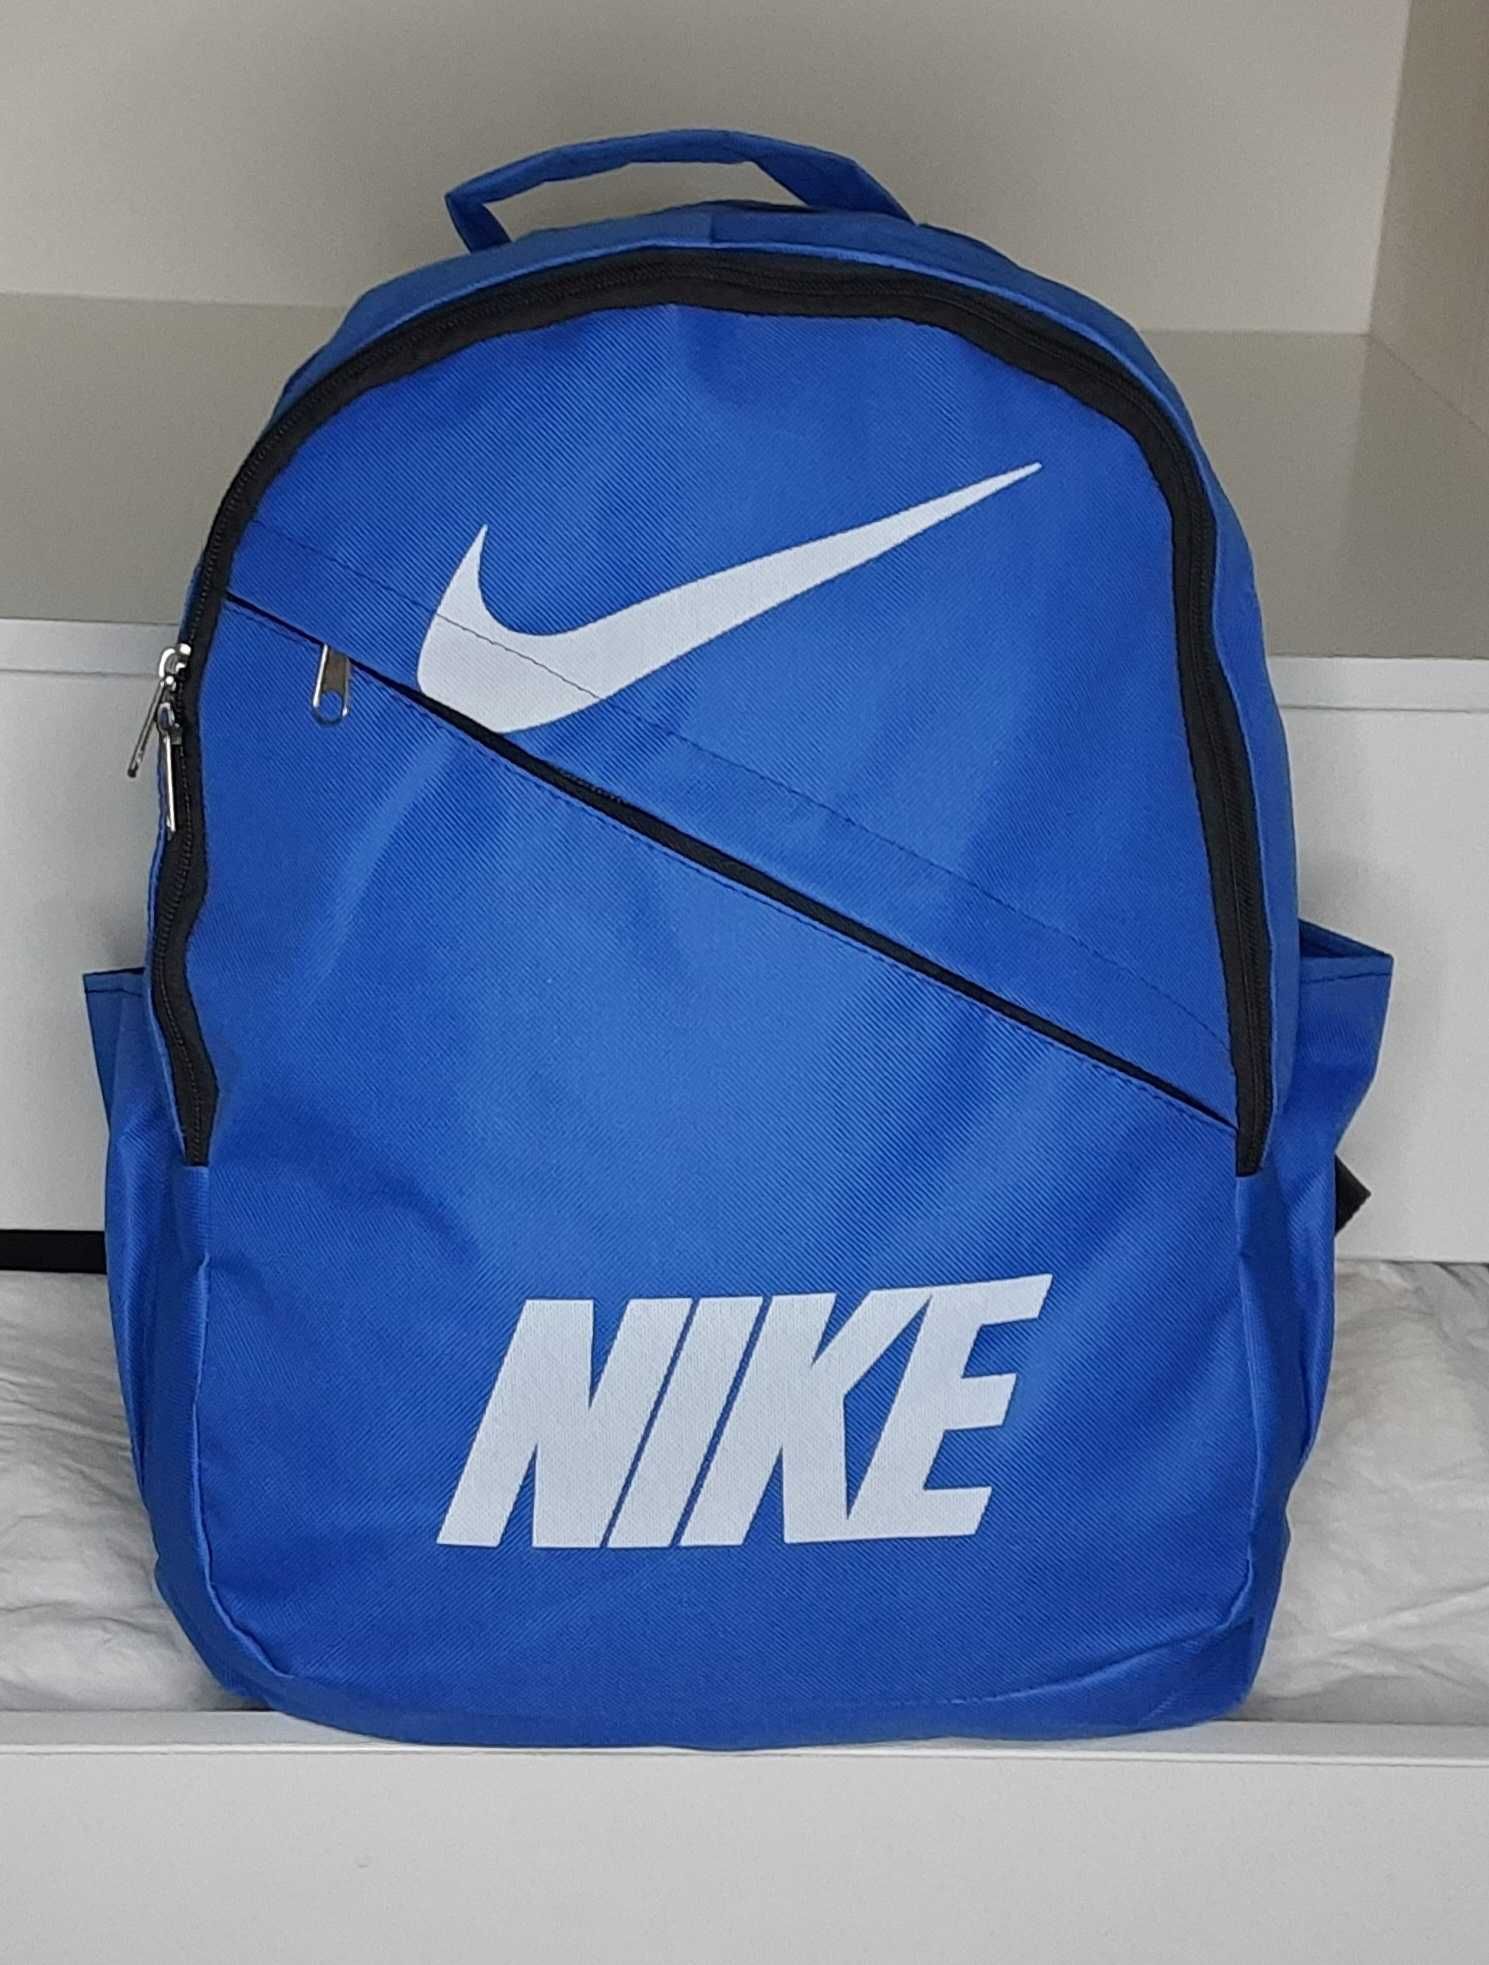 Новый женский рюкзак Nike.